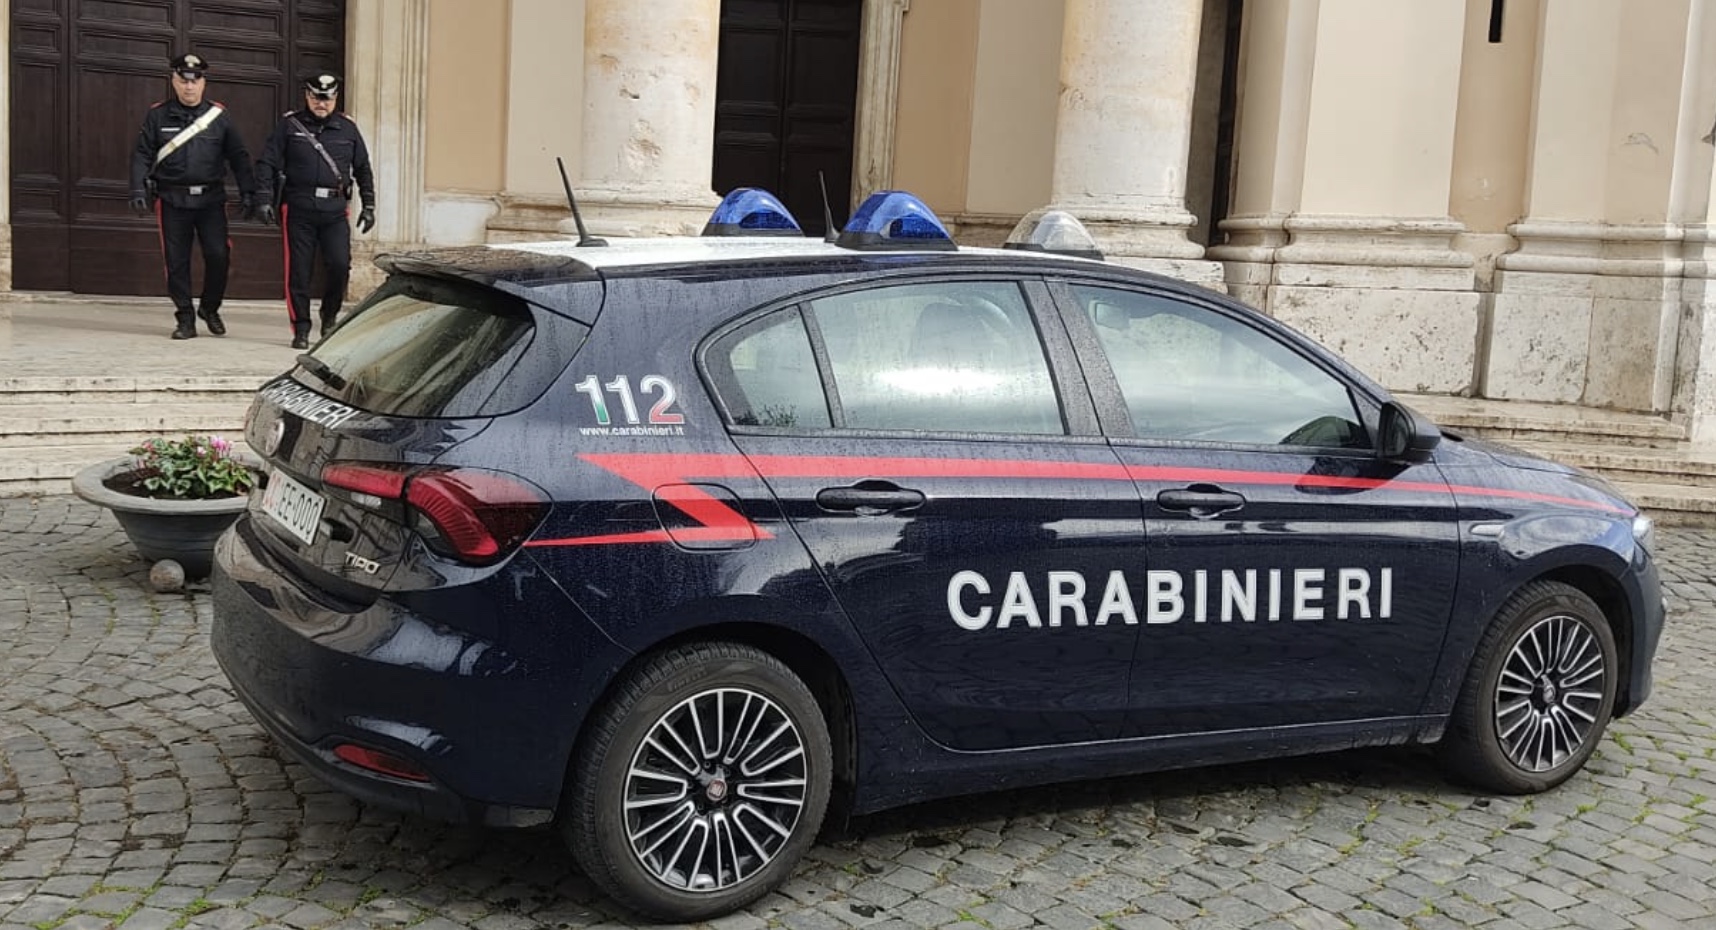 Cố gắng tống tiền linh mục giáo xứ, bị Carabinieri bắt giữ: "Ông ta vào nhà thờ với bình gas và bật lửa"